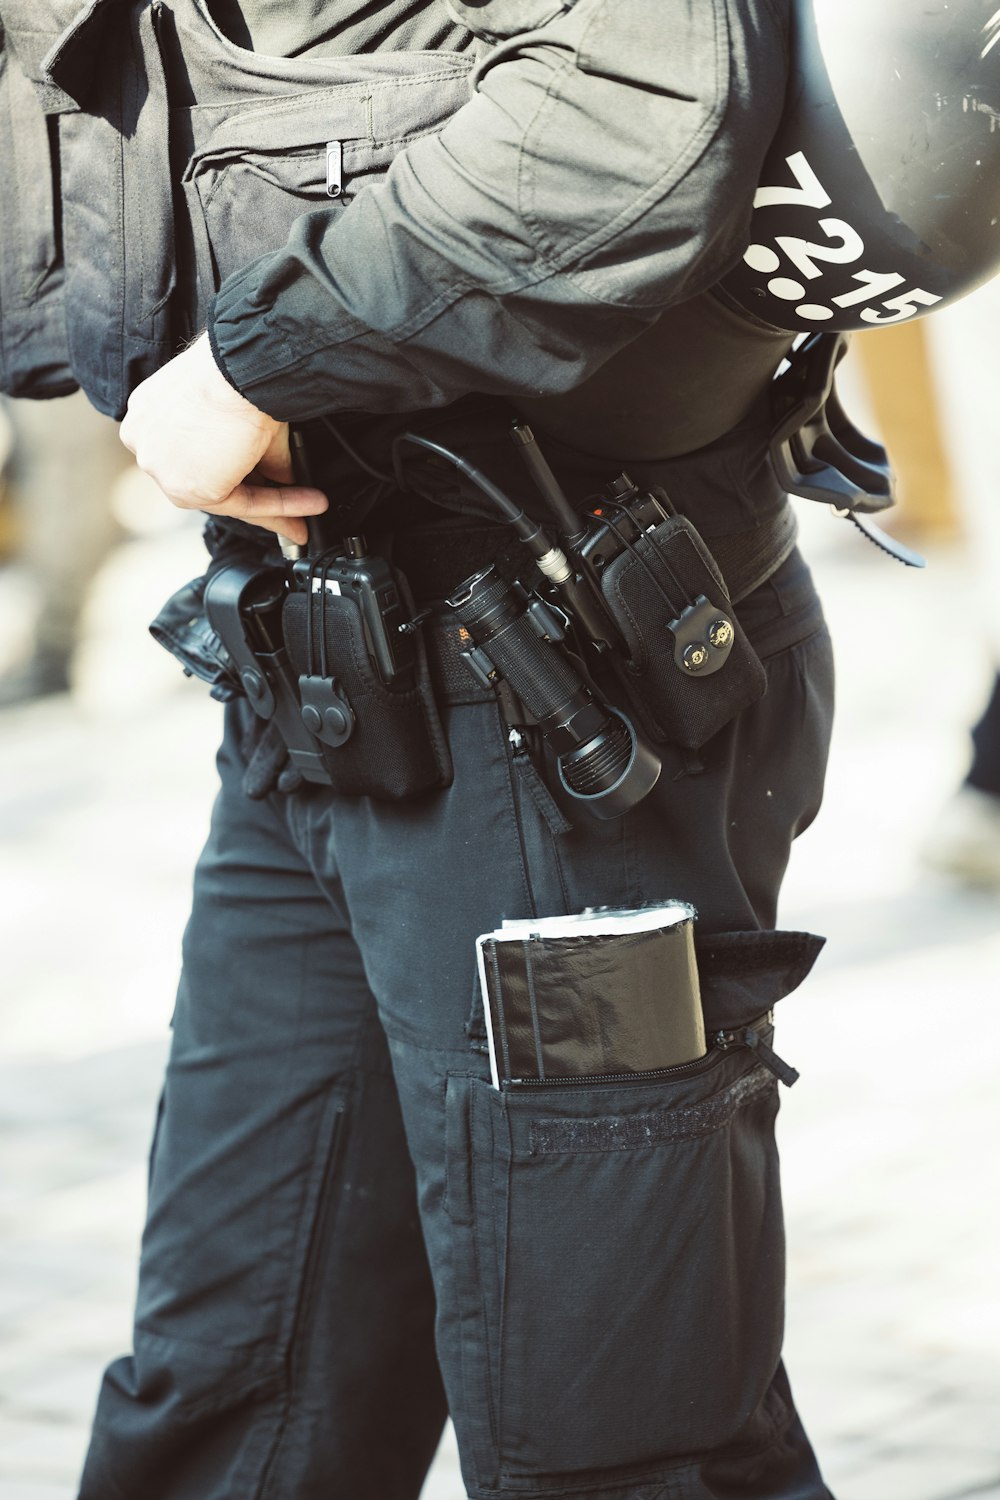 Um policial está segurando uma arma e um capacete